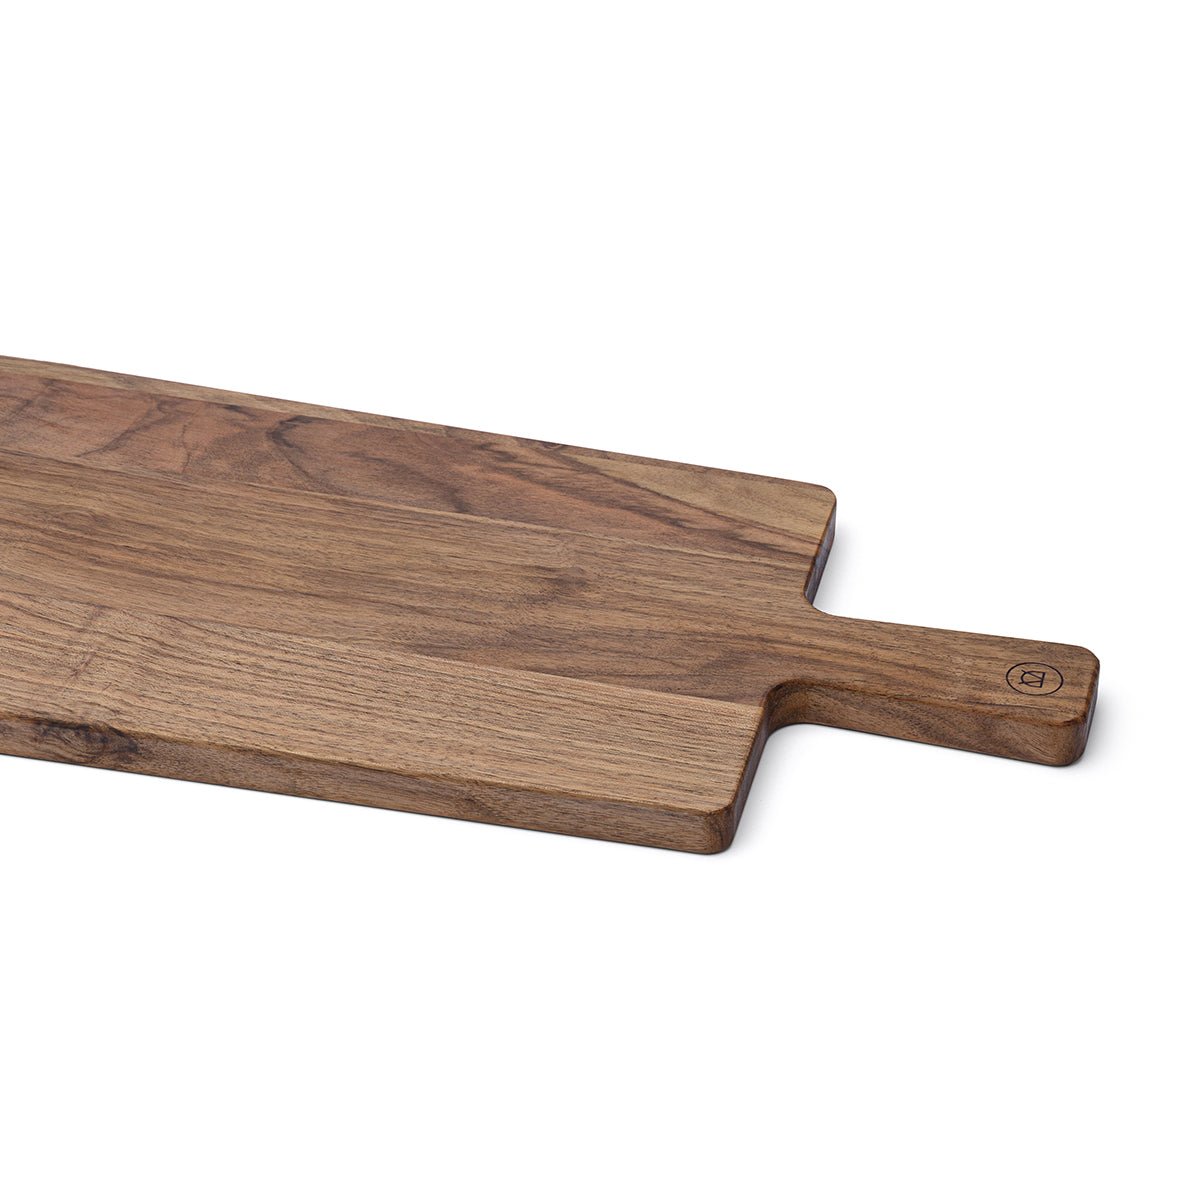 Stylish luxury - cutting Anton of walnut board board – made »Leni« Doll and Holzmanufaktur serving